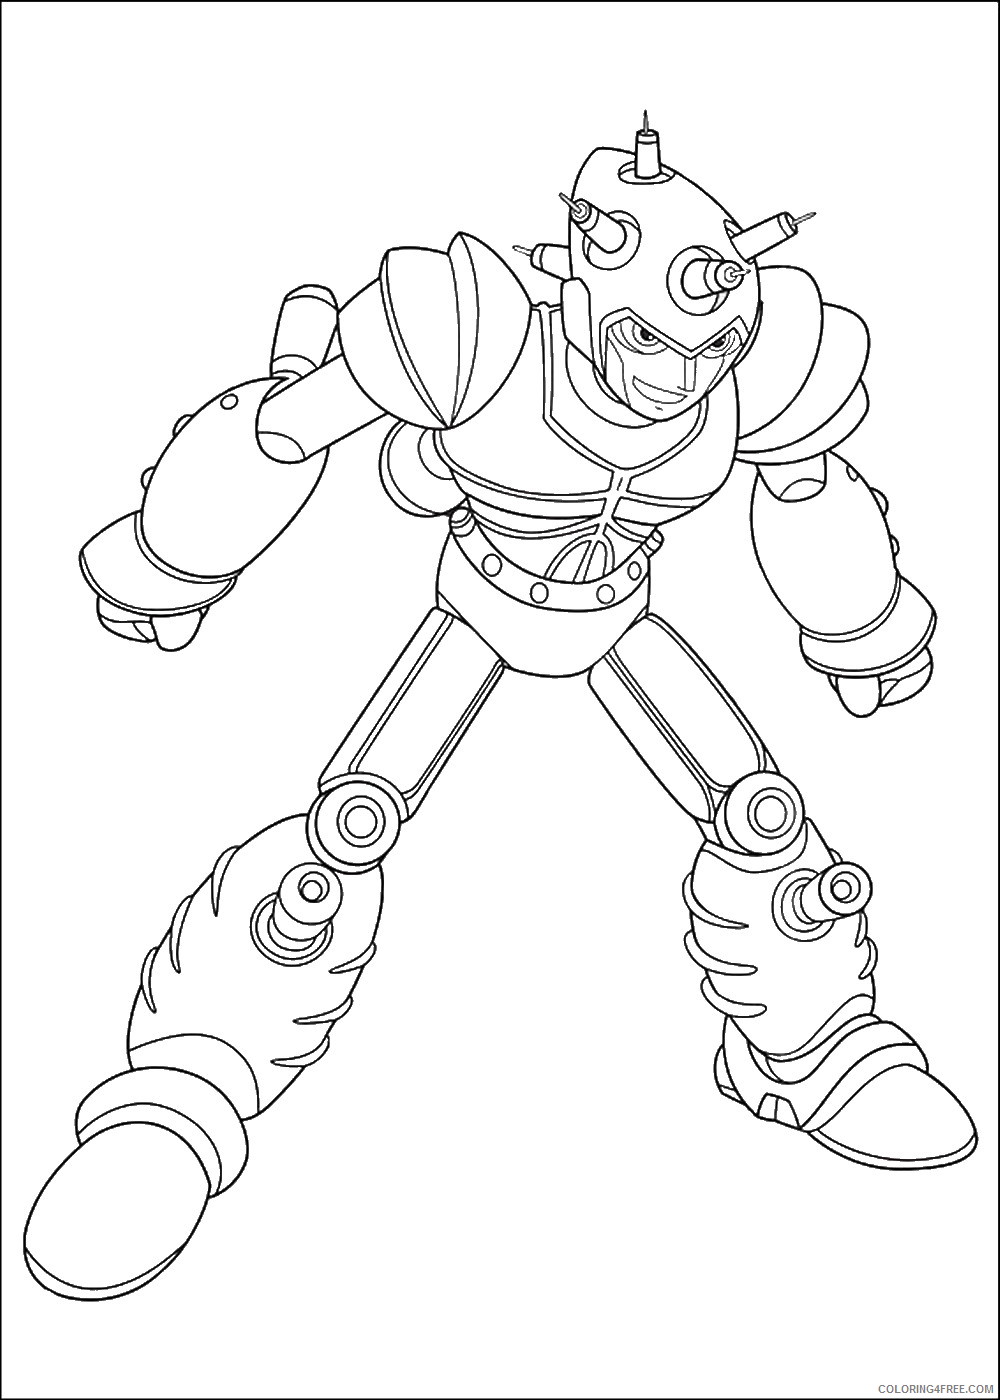 Astro Boy Coloring Pages Cartoons astro_boy_cl_04 Printable 2020 0709 Coloring4free